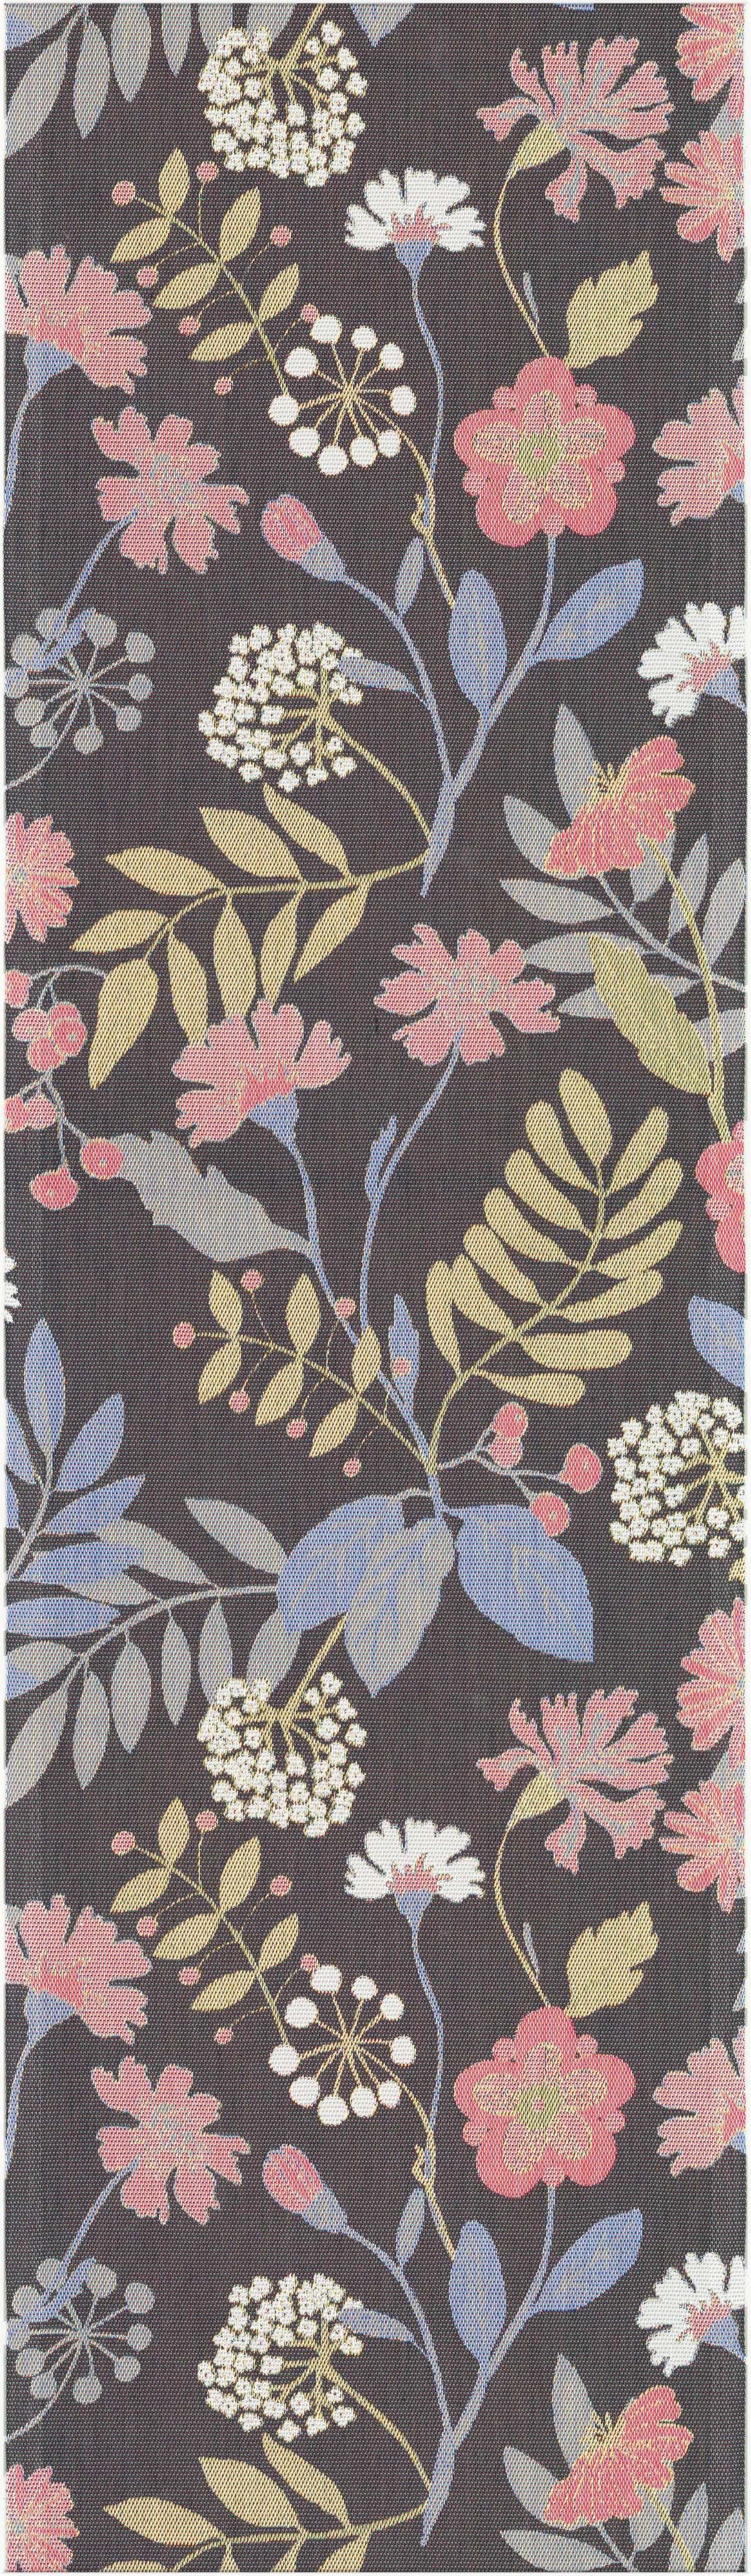 Ekelund Tischläufer Tischläufer Flower Pixel (6-farbig) Season cm, gewebt 35x120